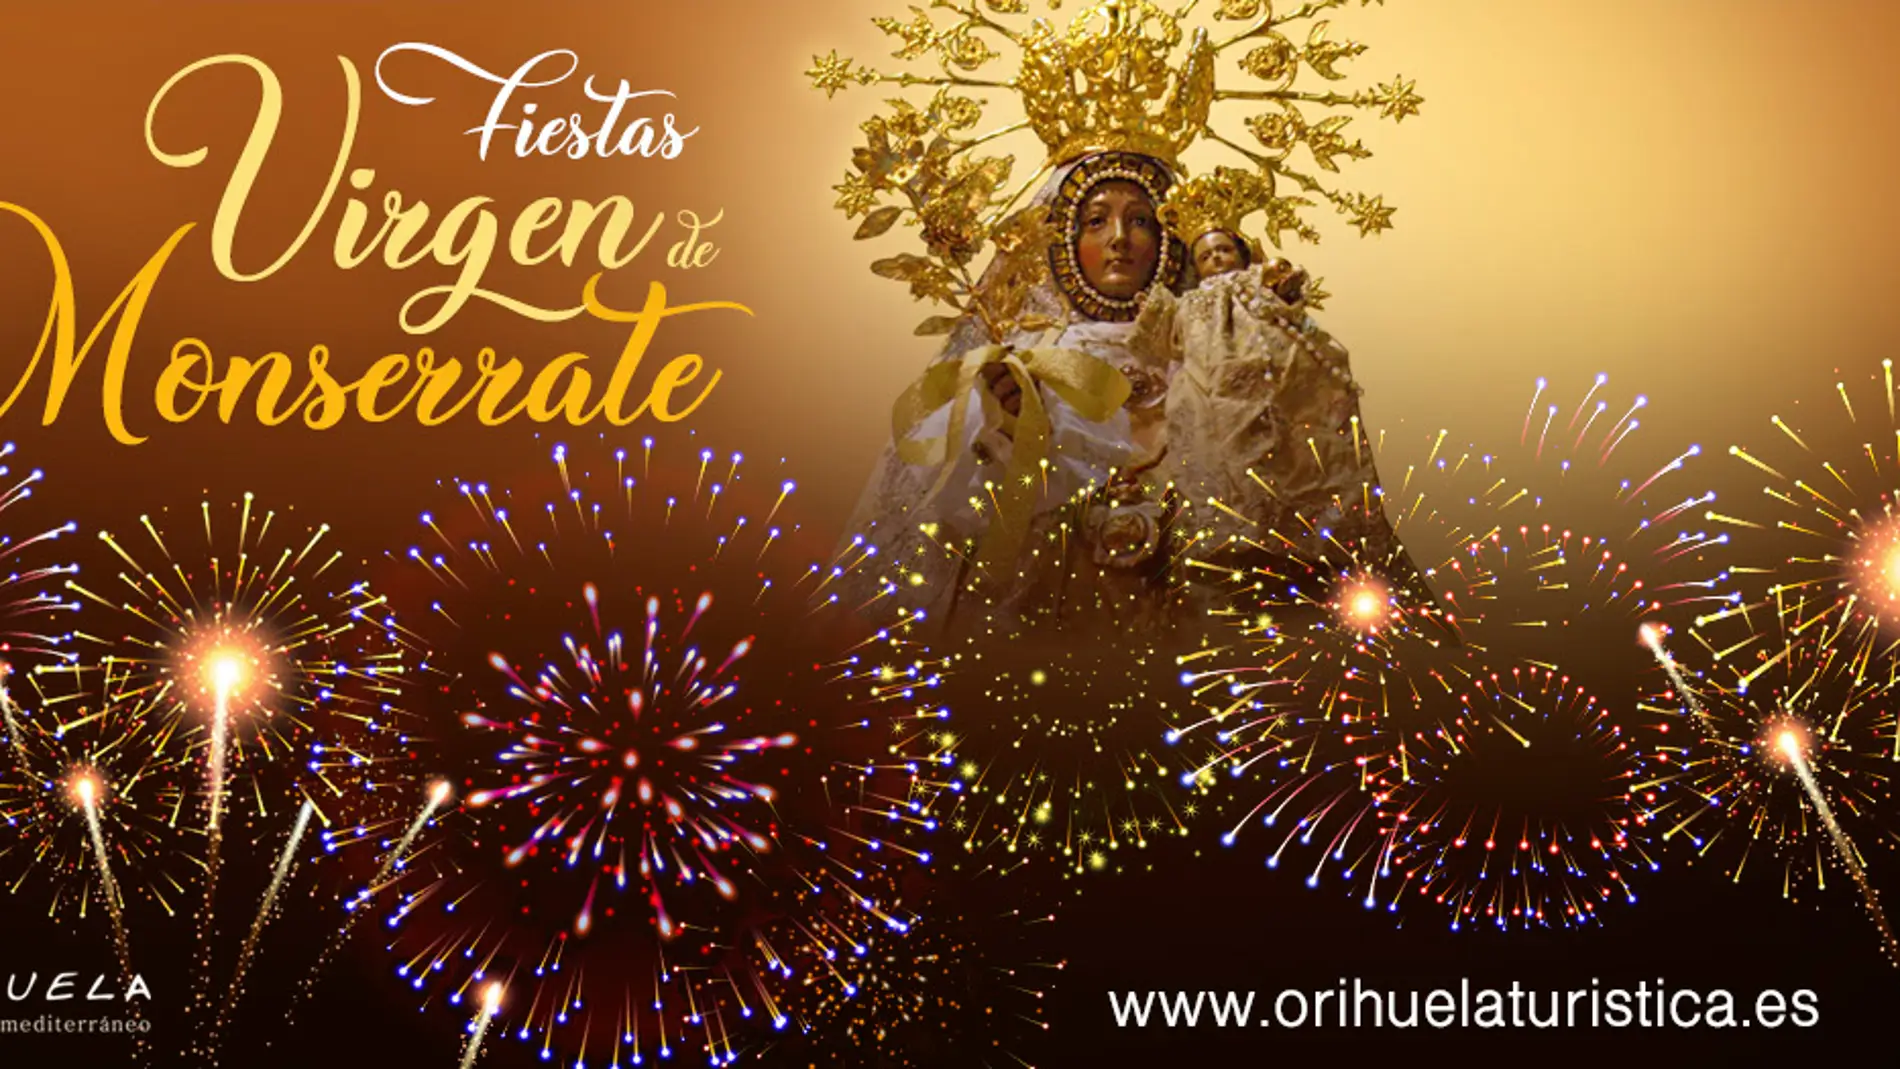 Festividades organiza una noche de Zarzuela y otra de Historia con motivo de las Fiestas de la Virgen de Monserrate 